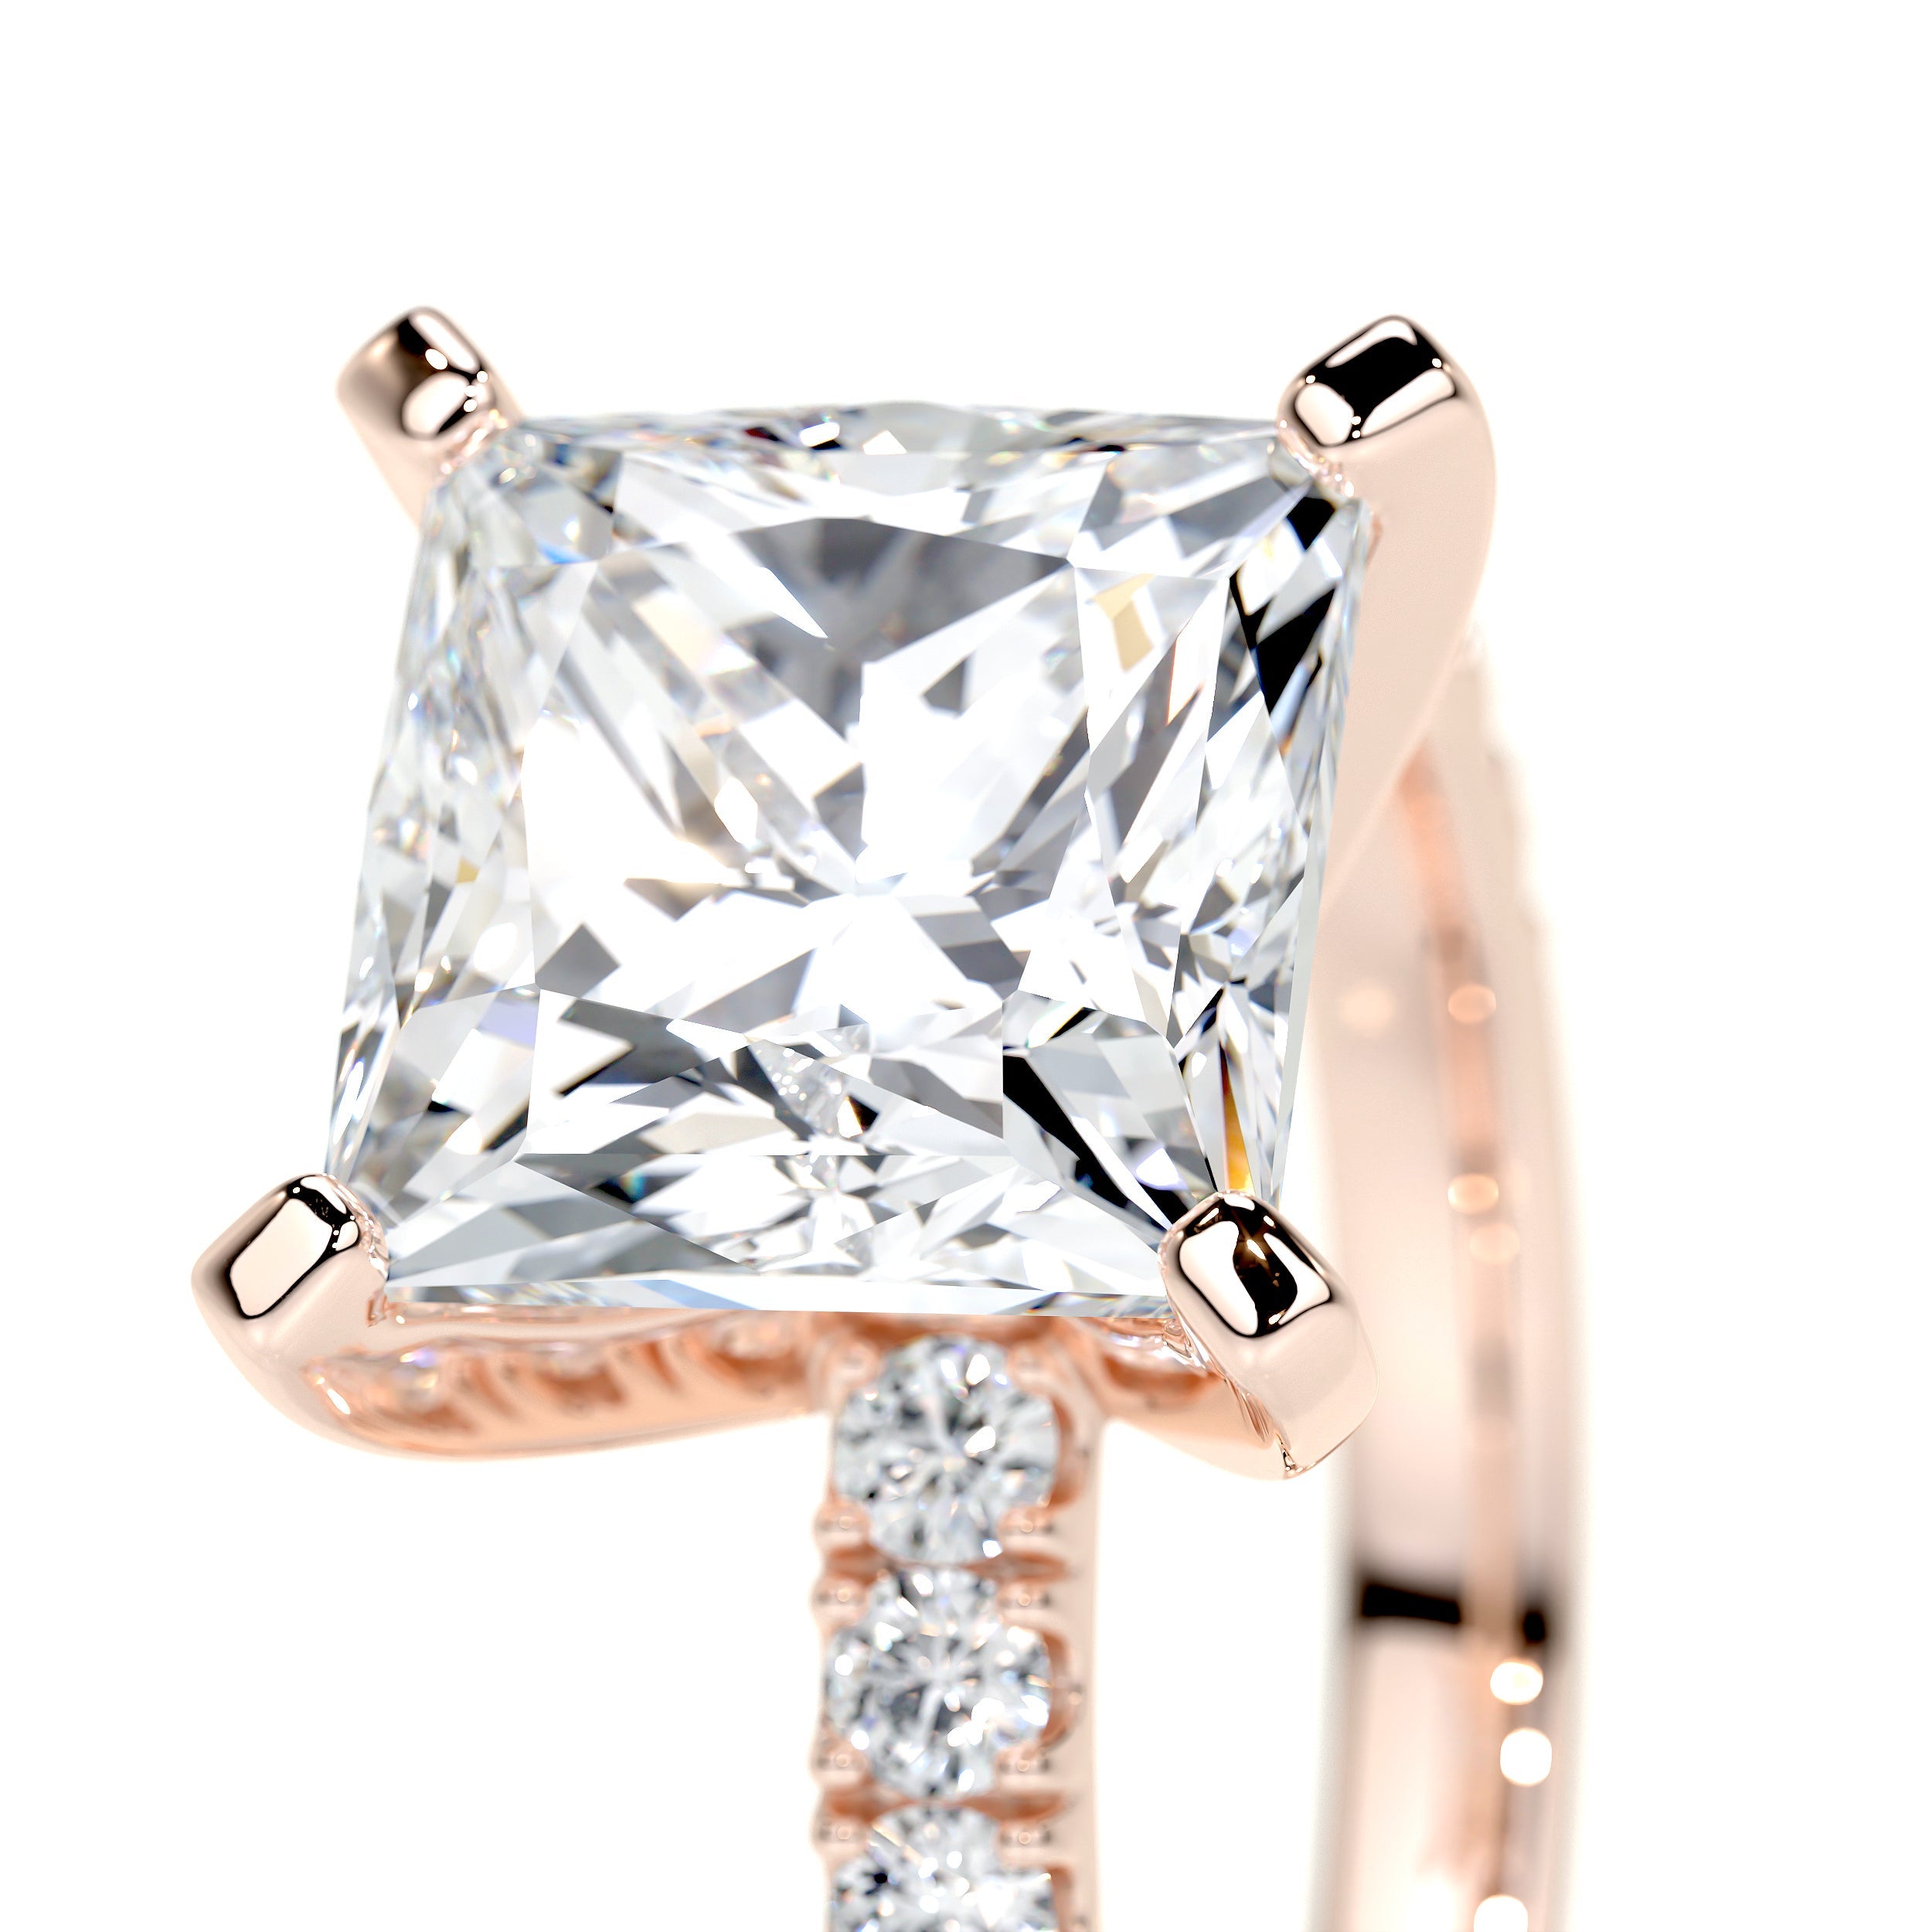 Blair Lab Grown Diamond Ring   (3.5 Carat) -14K Rose Gold